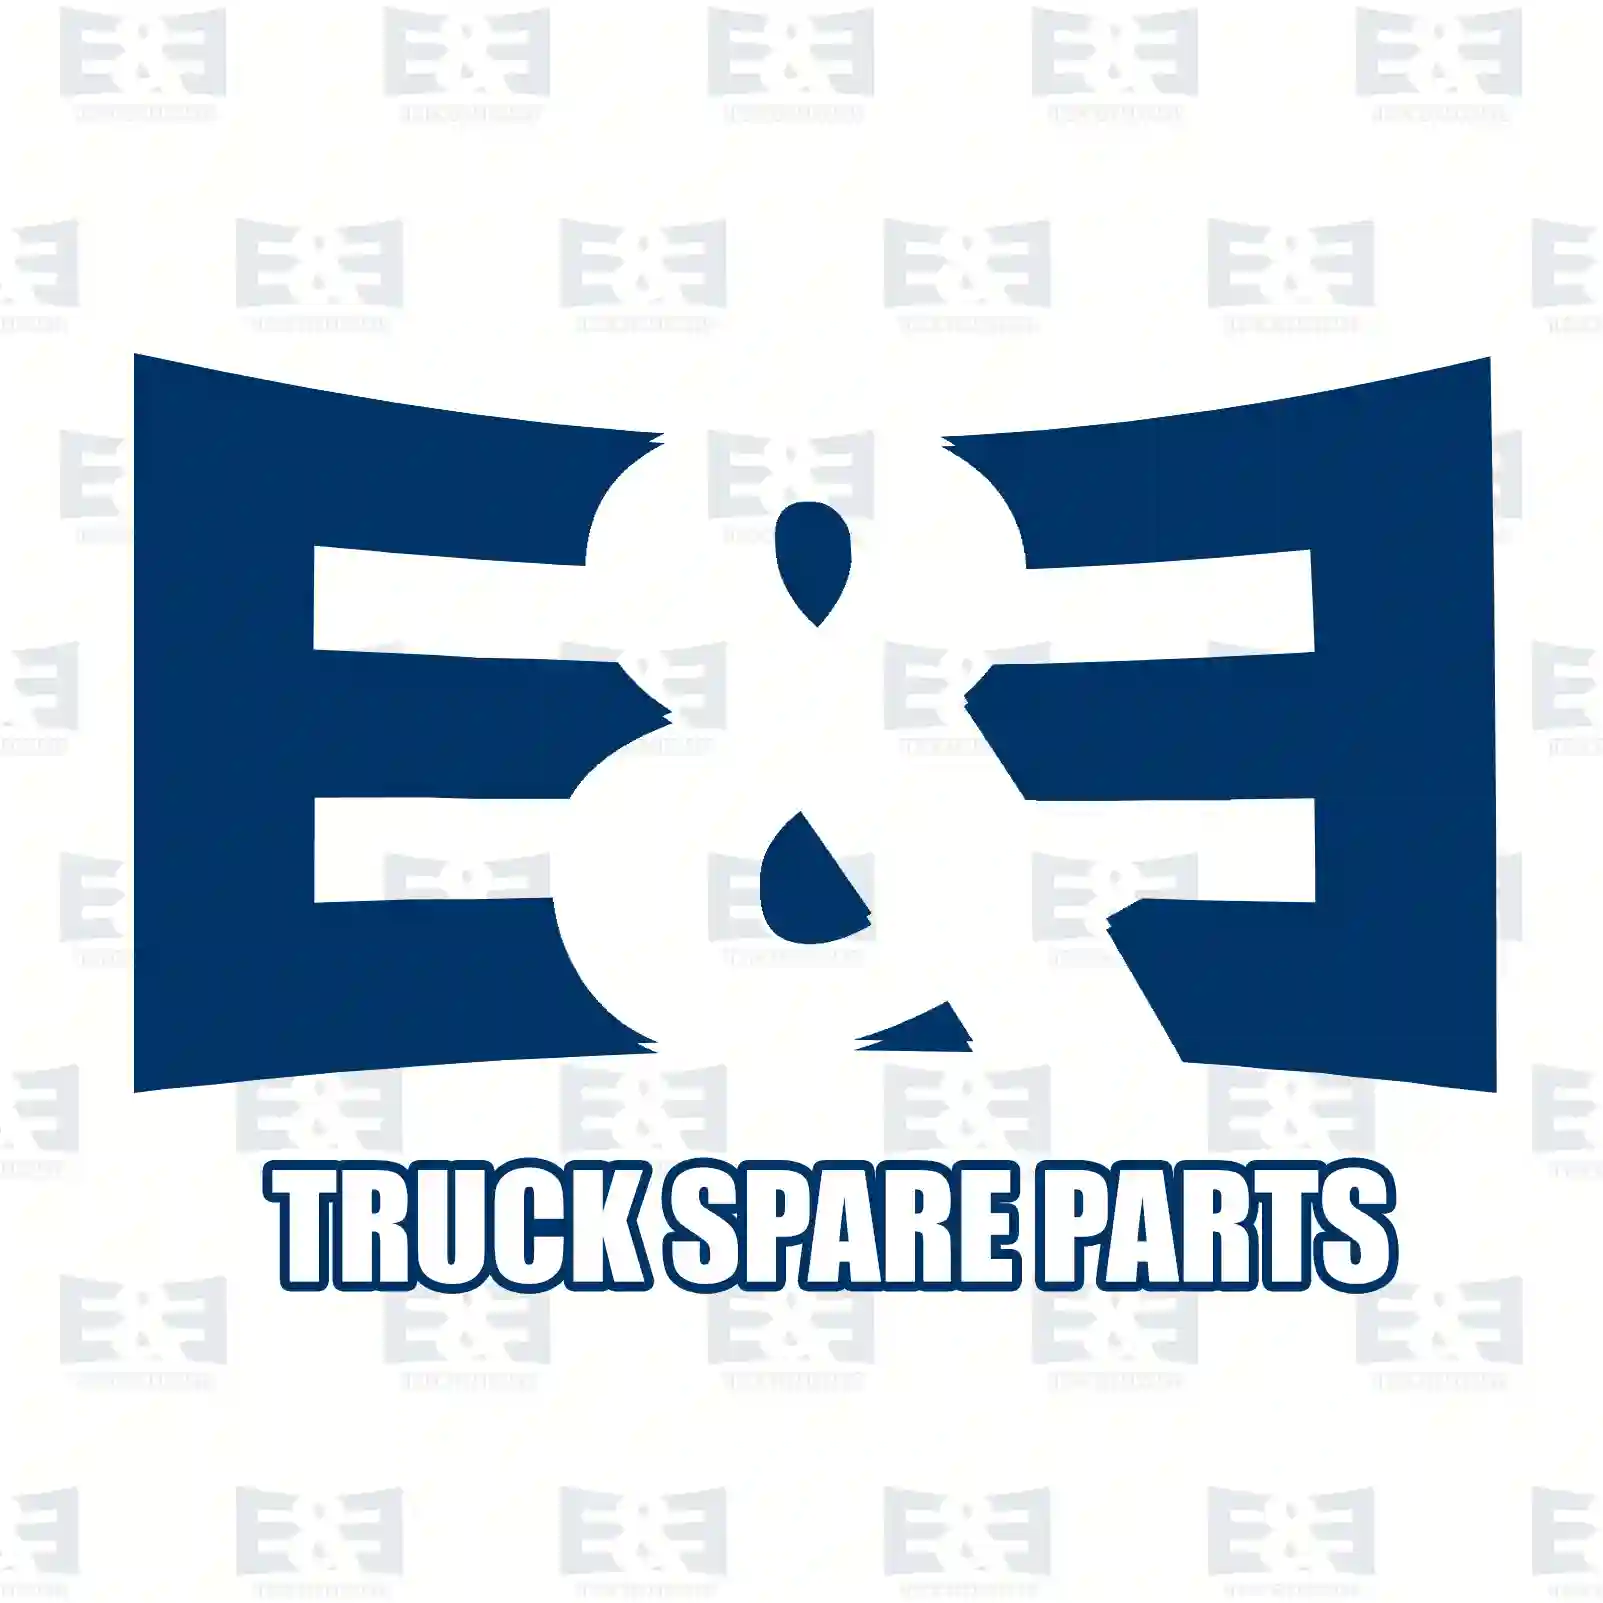 Warning label, 2E2285152, , ||  2E2285152 E&E Truck Spare Parts | Truck Spare Parts, Auotomotive Spare Parts Warning label, 2E2285152, , ||  2E2285152 E&E Truck Spare Parts | Truck Spare Parts, Auotomotive Spare Parts